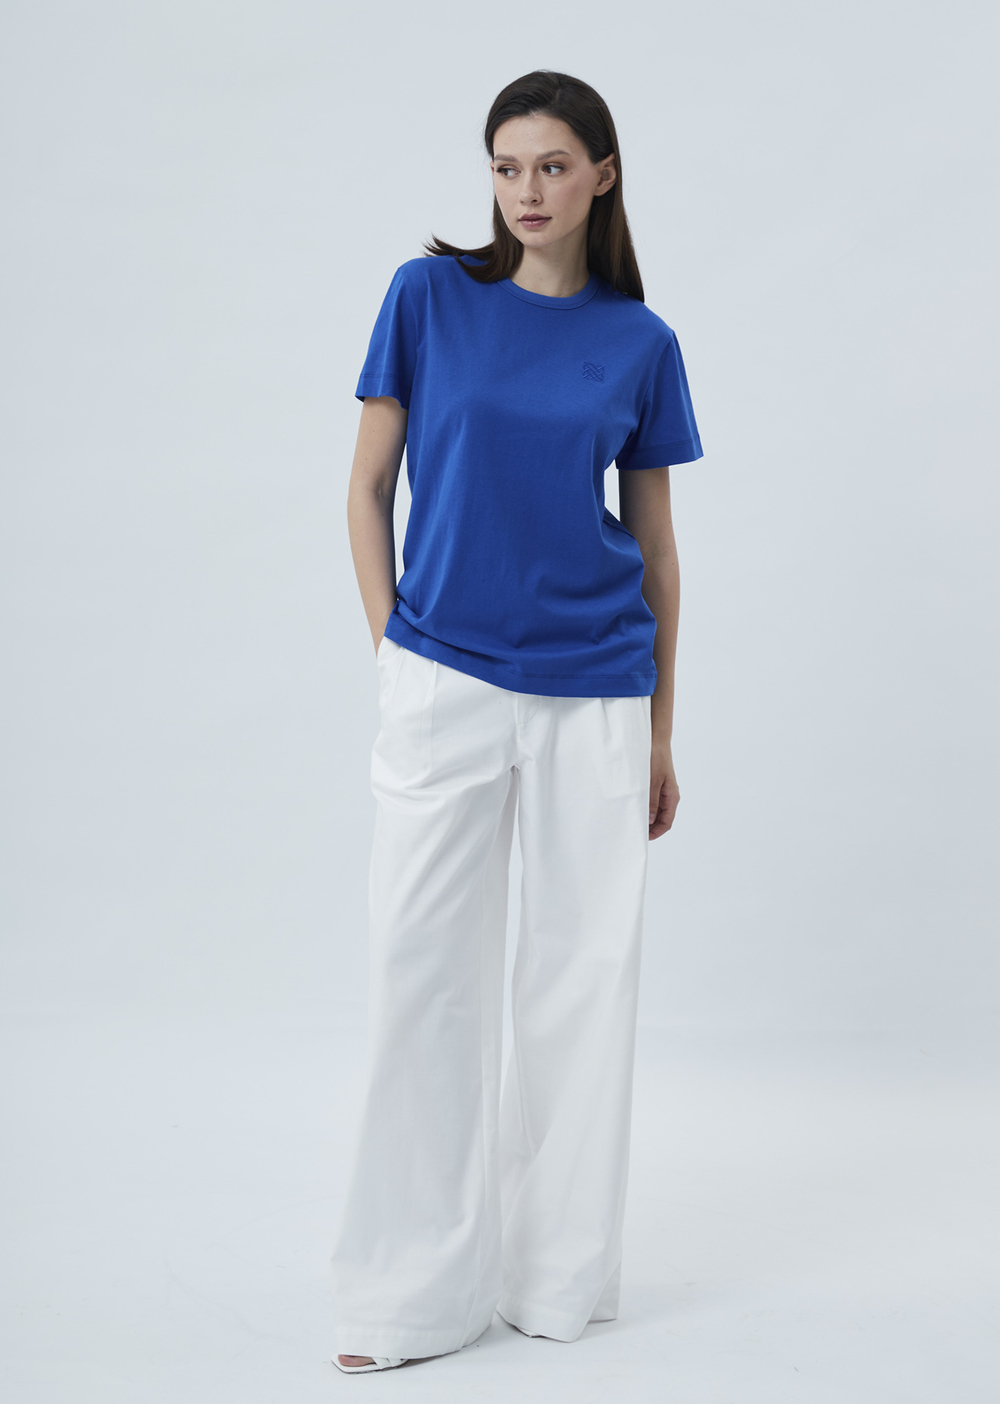 Женская футболка с вышивкой синий р.XS